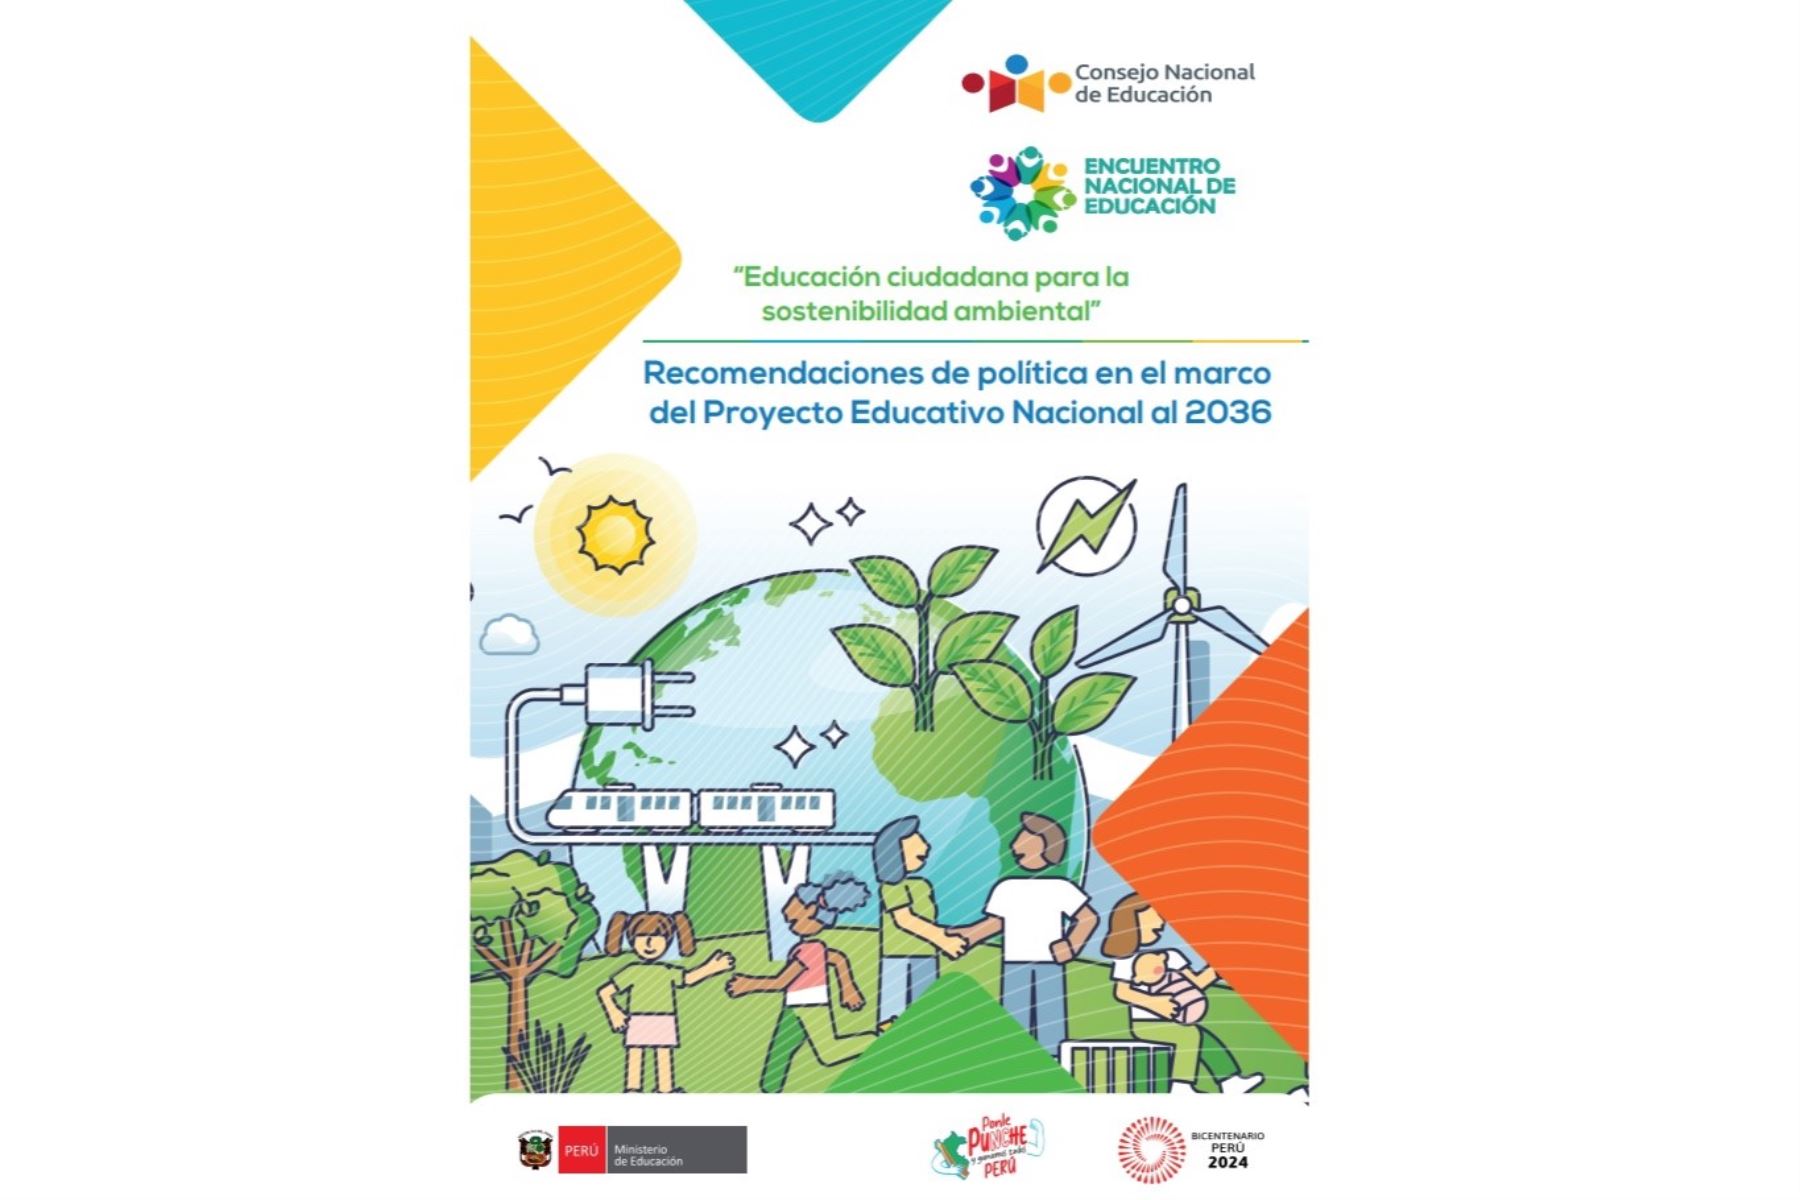 Nueva publicación del CNE sobre educación ciudadana para la sostenibilidad ambiental. Imagen: Internet.